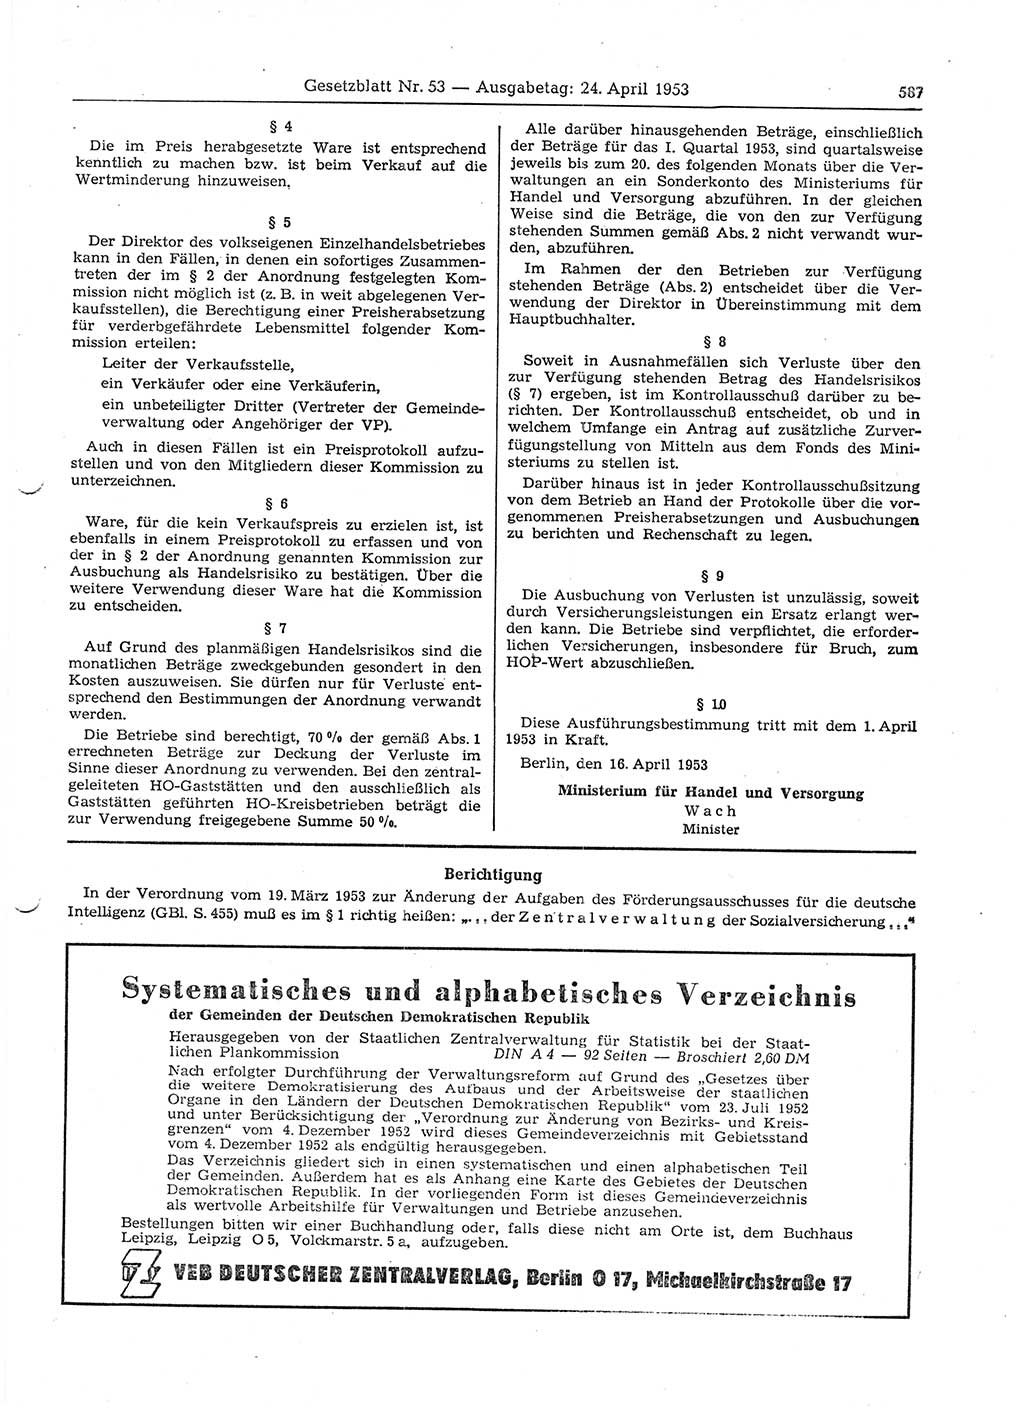 Gesetzblatt (GBl.) der Deutschen Demokratischen Republik (DDR) 1953, Seite 587 (GBl. DDR 1953, S. 587)